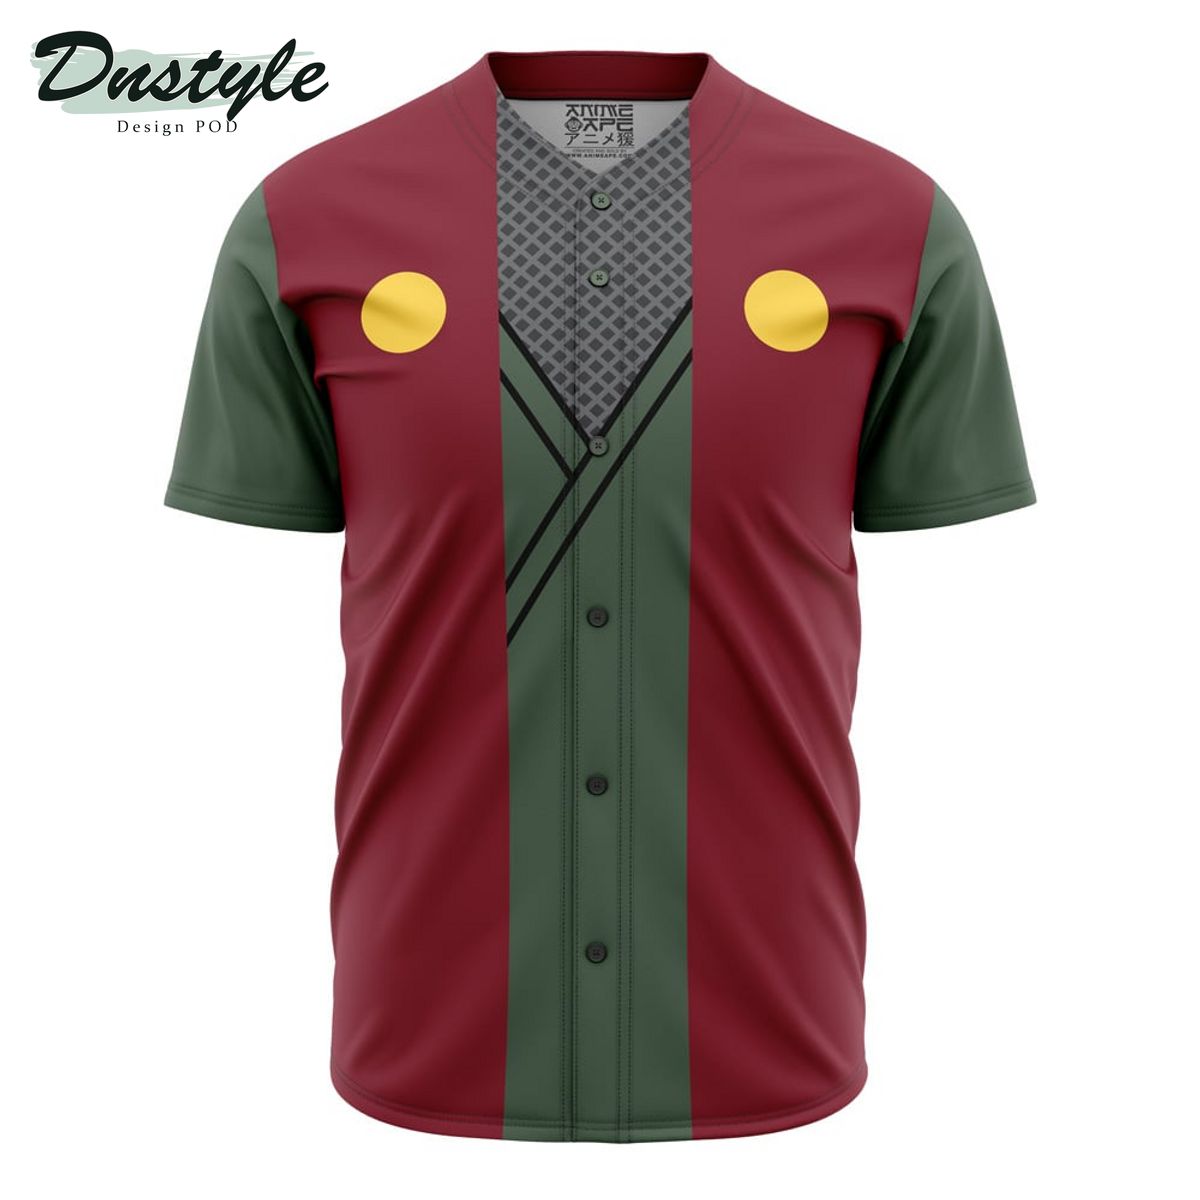 Jiraiya Uniform Naruto Baseball Jersey